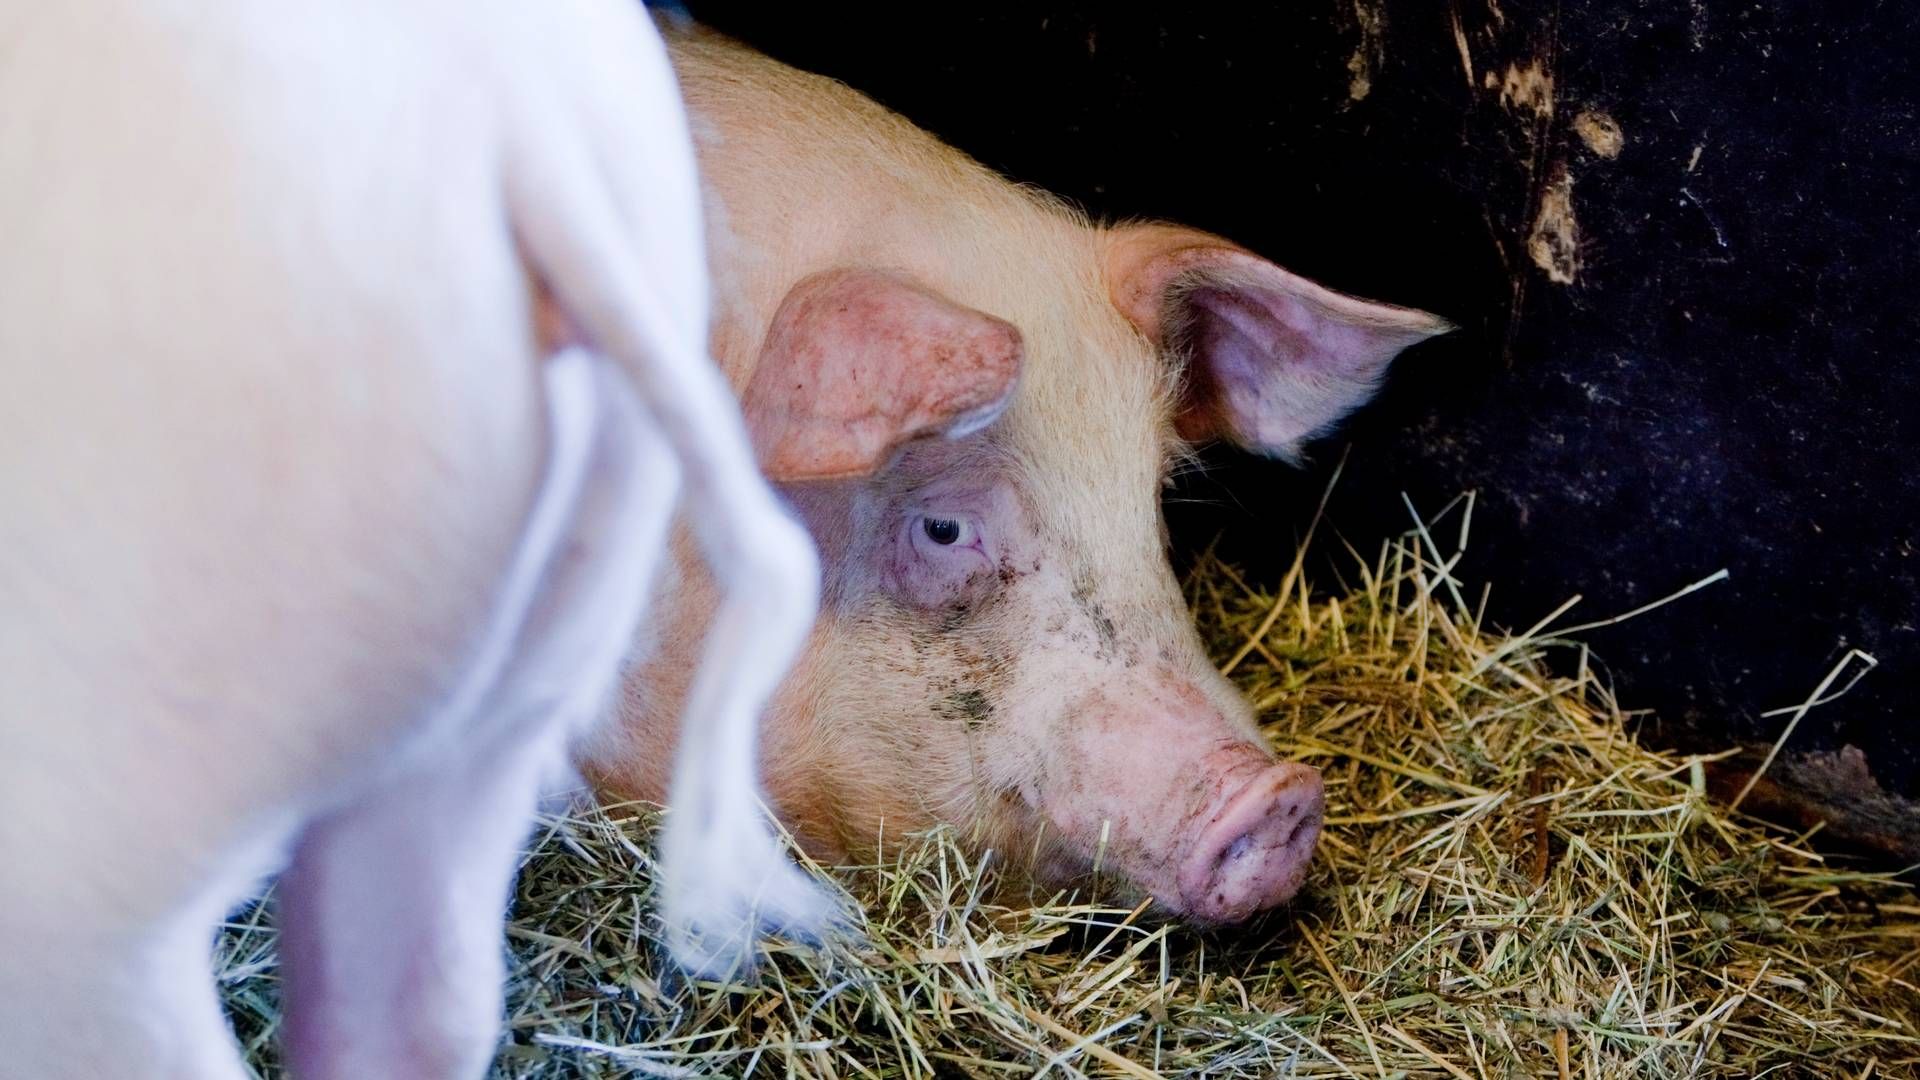 Griser må ha stimulering og noe å holde på med, sier Norsvin-sjefen. Han oppfordrer svineprodusentene til å sørge for «nok fôr, strø og variert aktivitets- og rotemateriale». | Foto: Gorm Kallestad / NTB